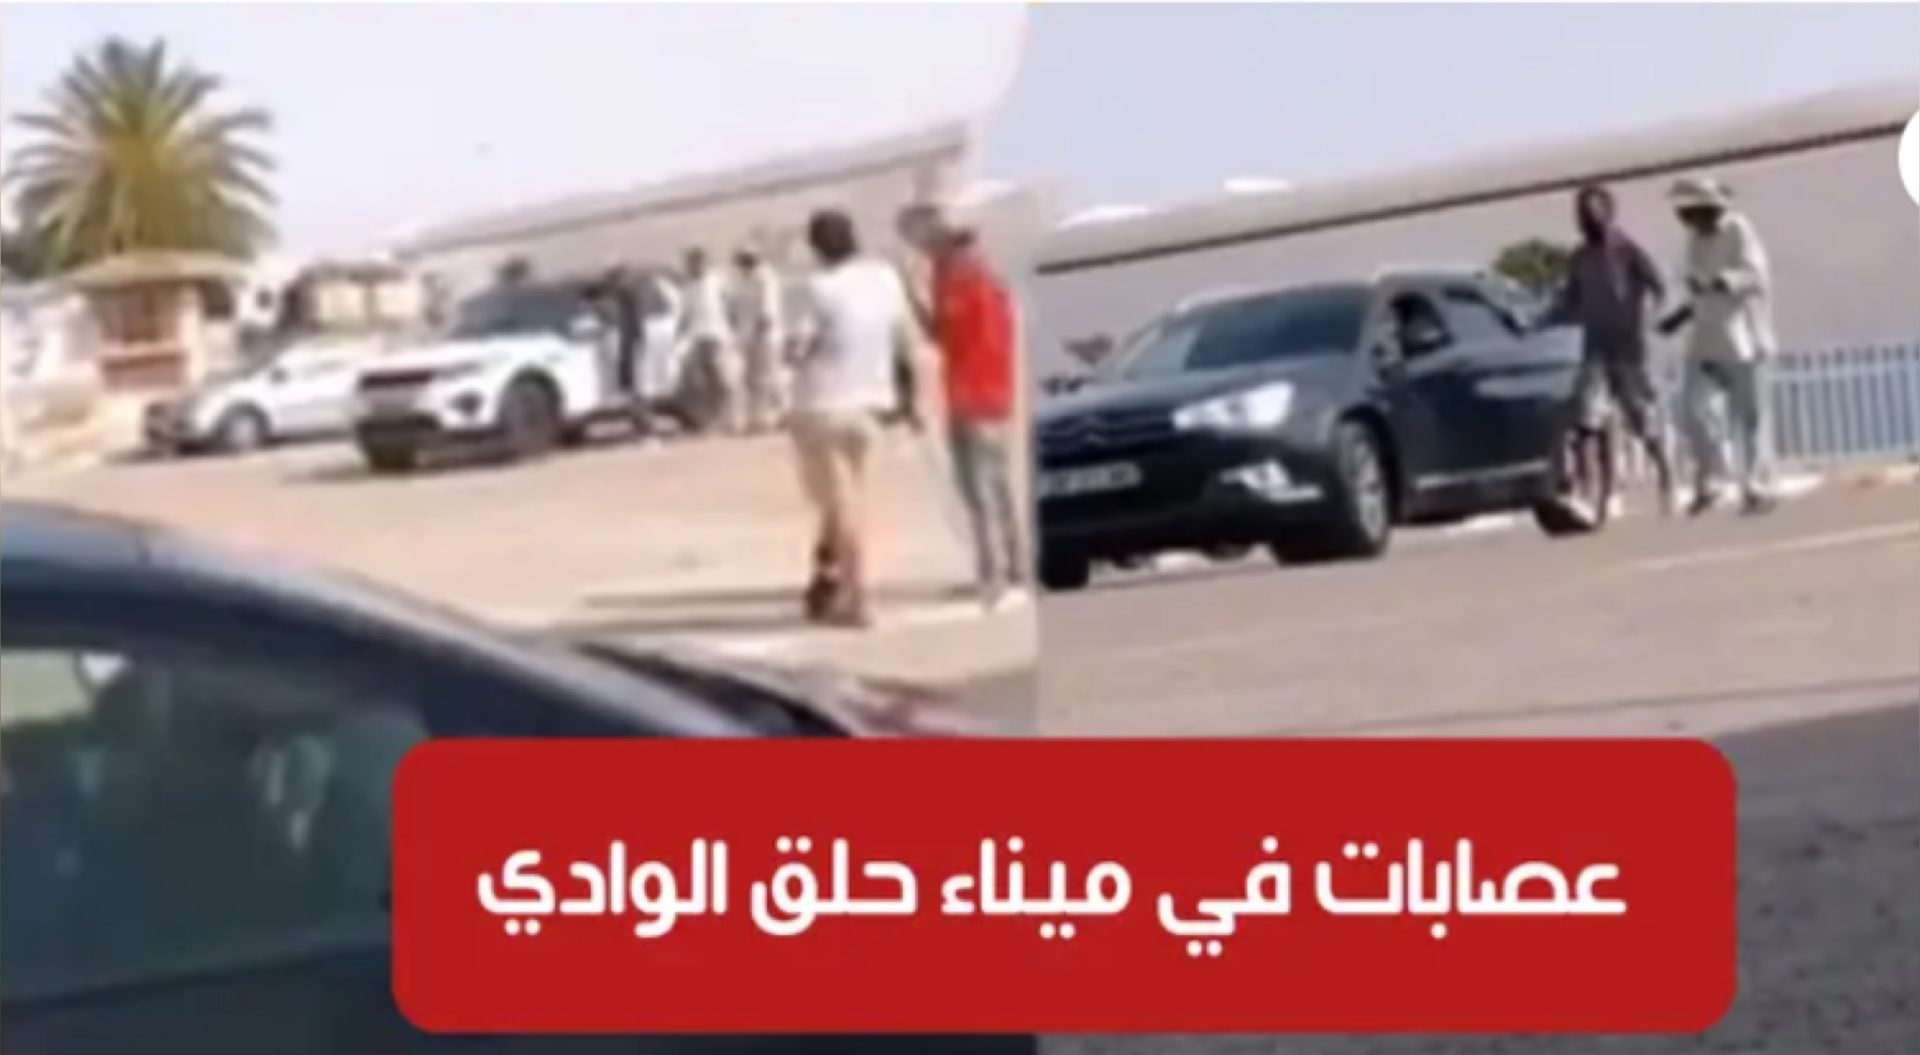 فيديو صادم / ميناء حلق الوادي : منحرفون يهاجمون أفراد الجالية التونسية بالخارج لسلبهم تحت التهديد 